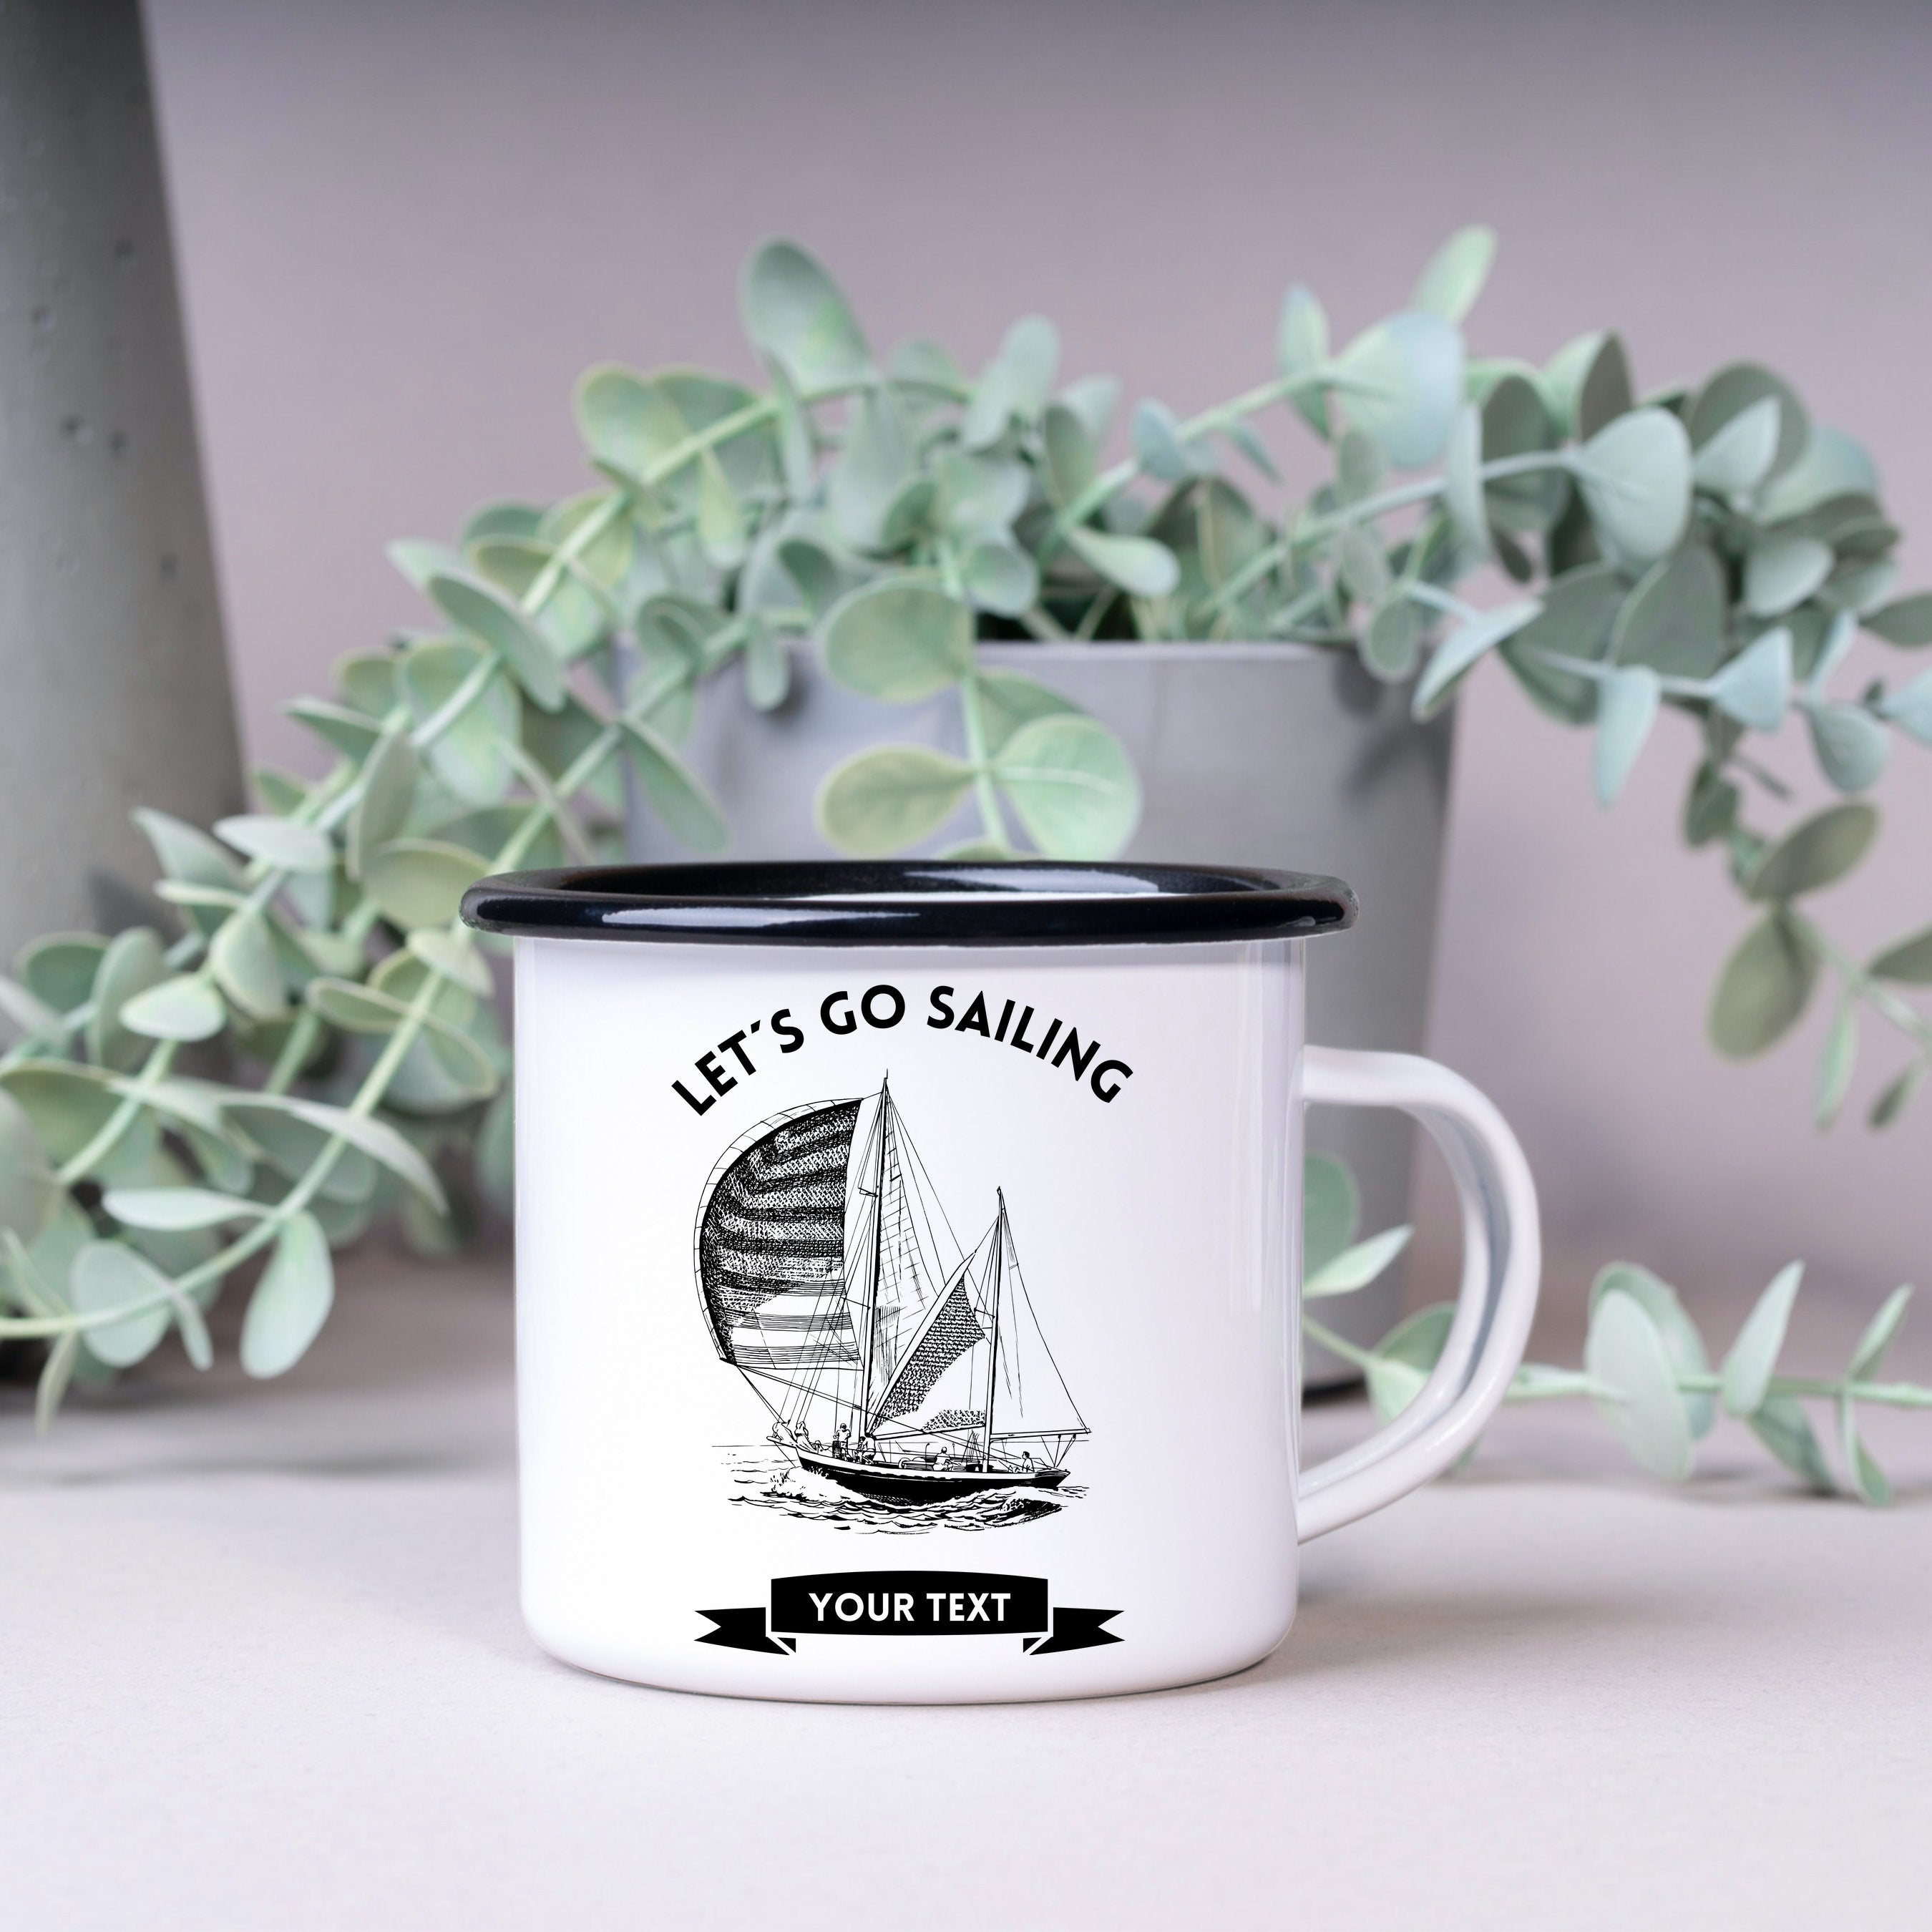 Emaille Tasse| Becher| Geschenk für Segelfans| Lets go sailing| personalisiert mit Wunschnamen - GlamourDesign